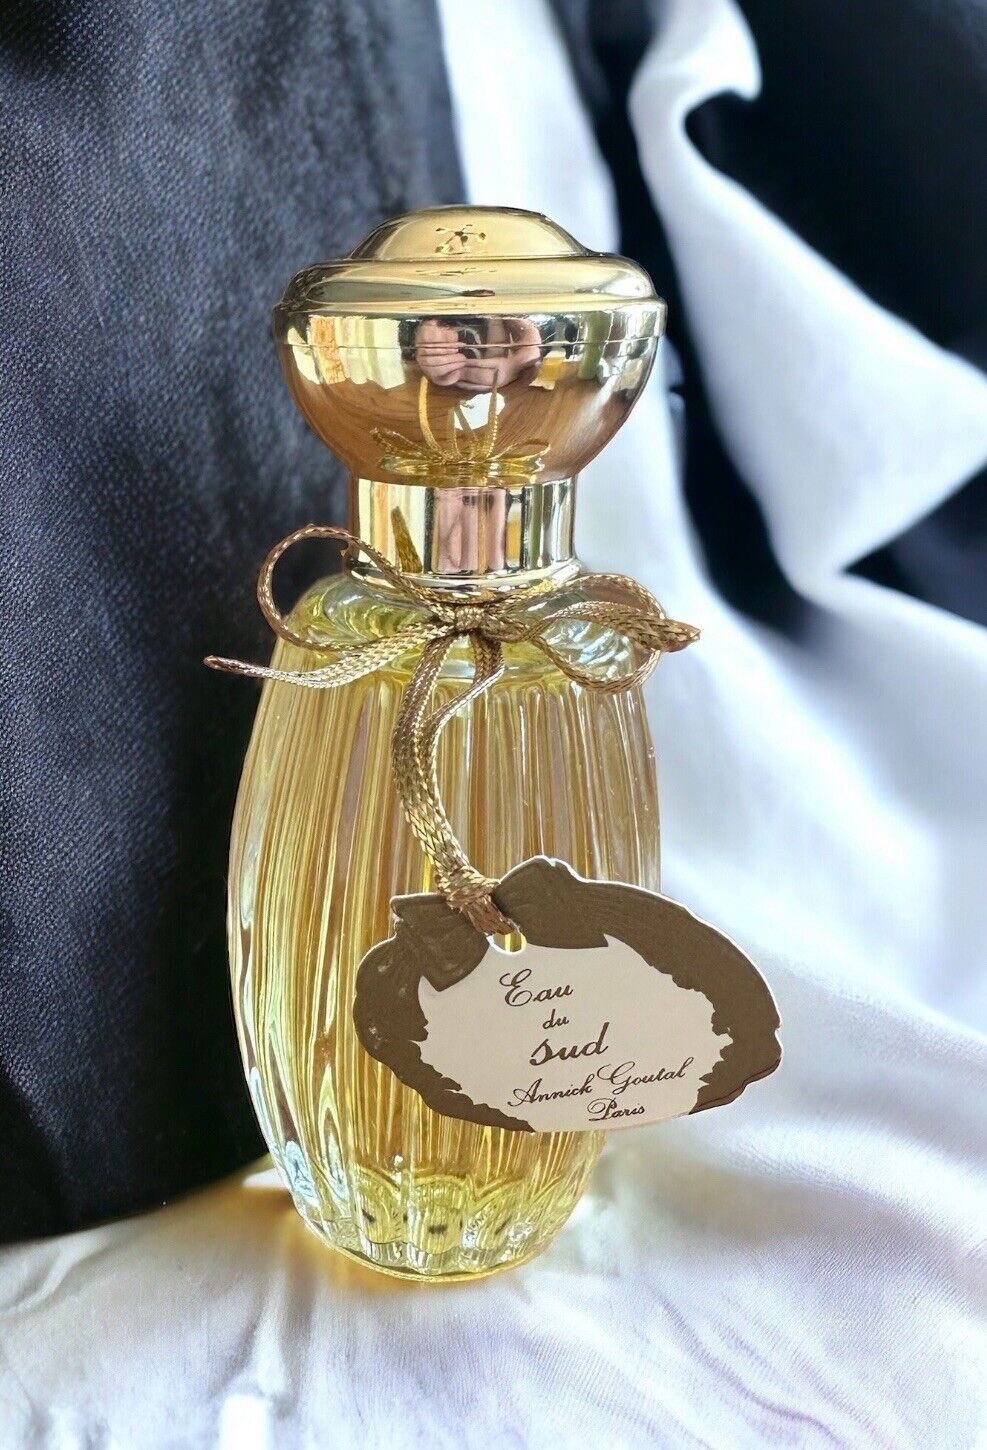 Annick Goutal Eau De Sud 100ml 3 1/3 Oz Vintage Perfume No Box